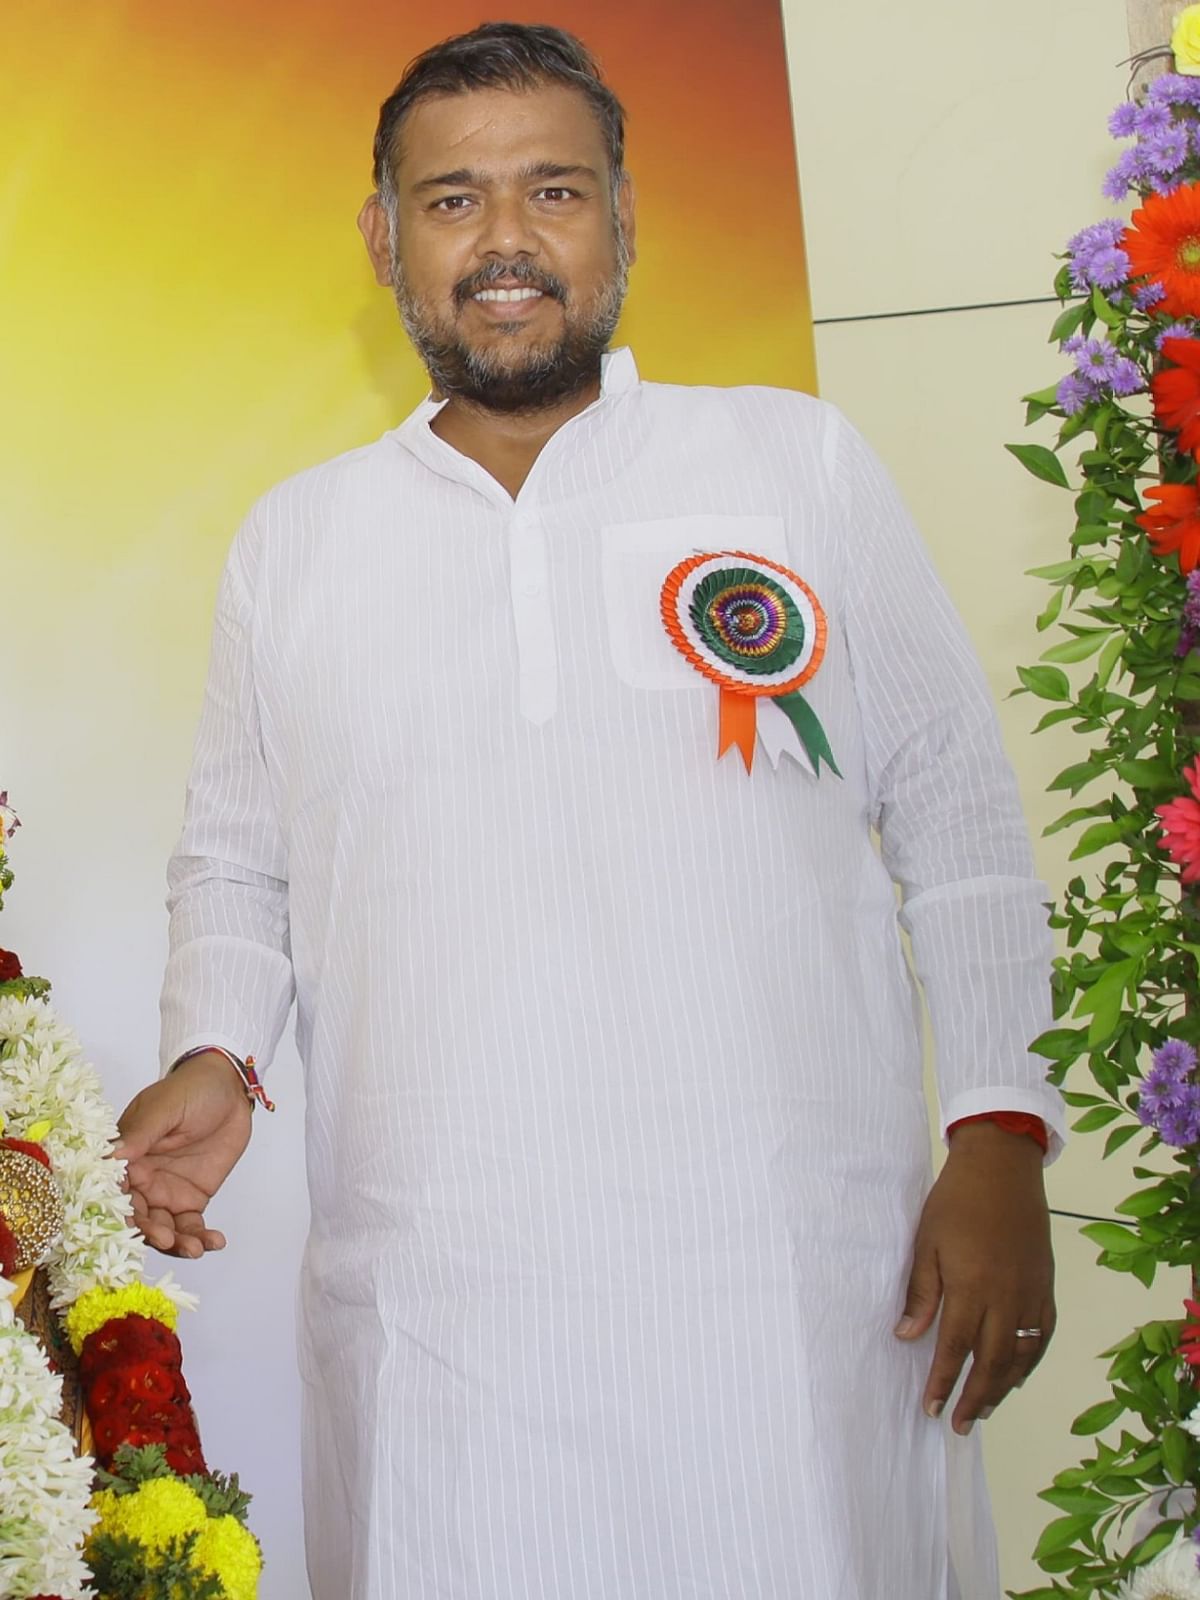 Vishal Patil defeated BJP MP Sanjaykaka Patil by a margin of 1,00,053 in Sangli, Maharashtra.